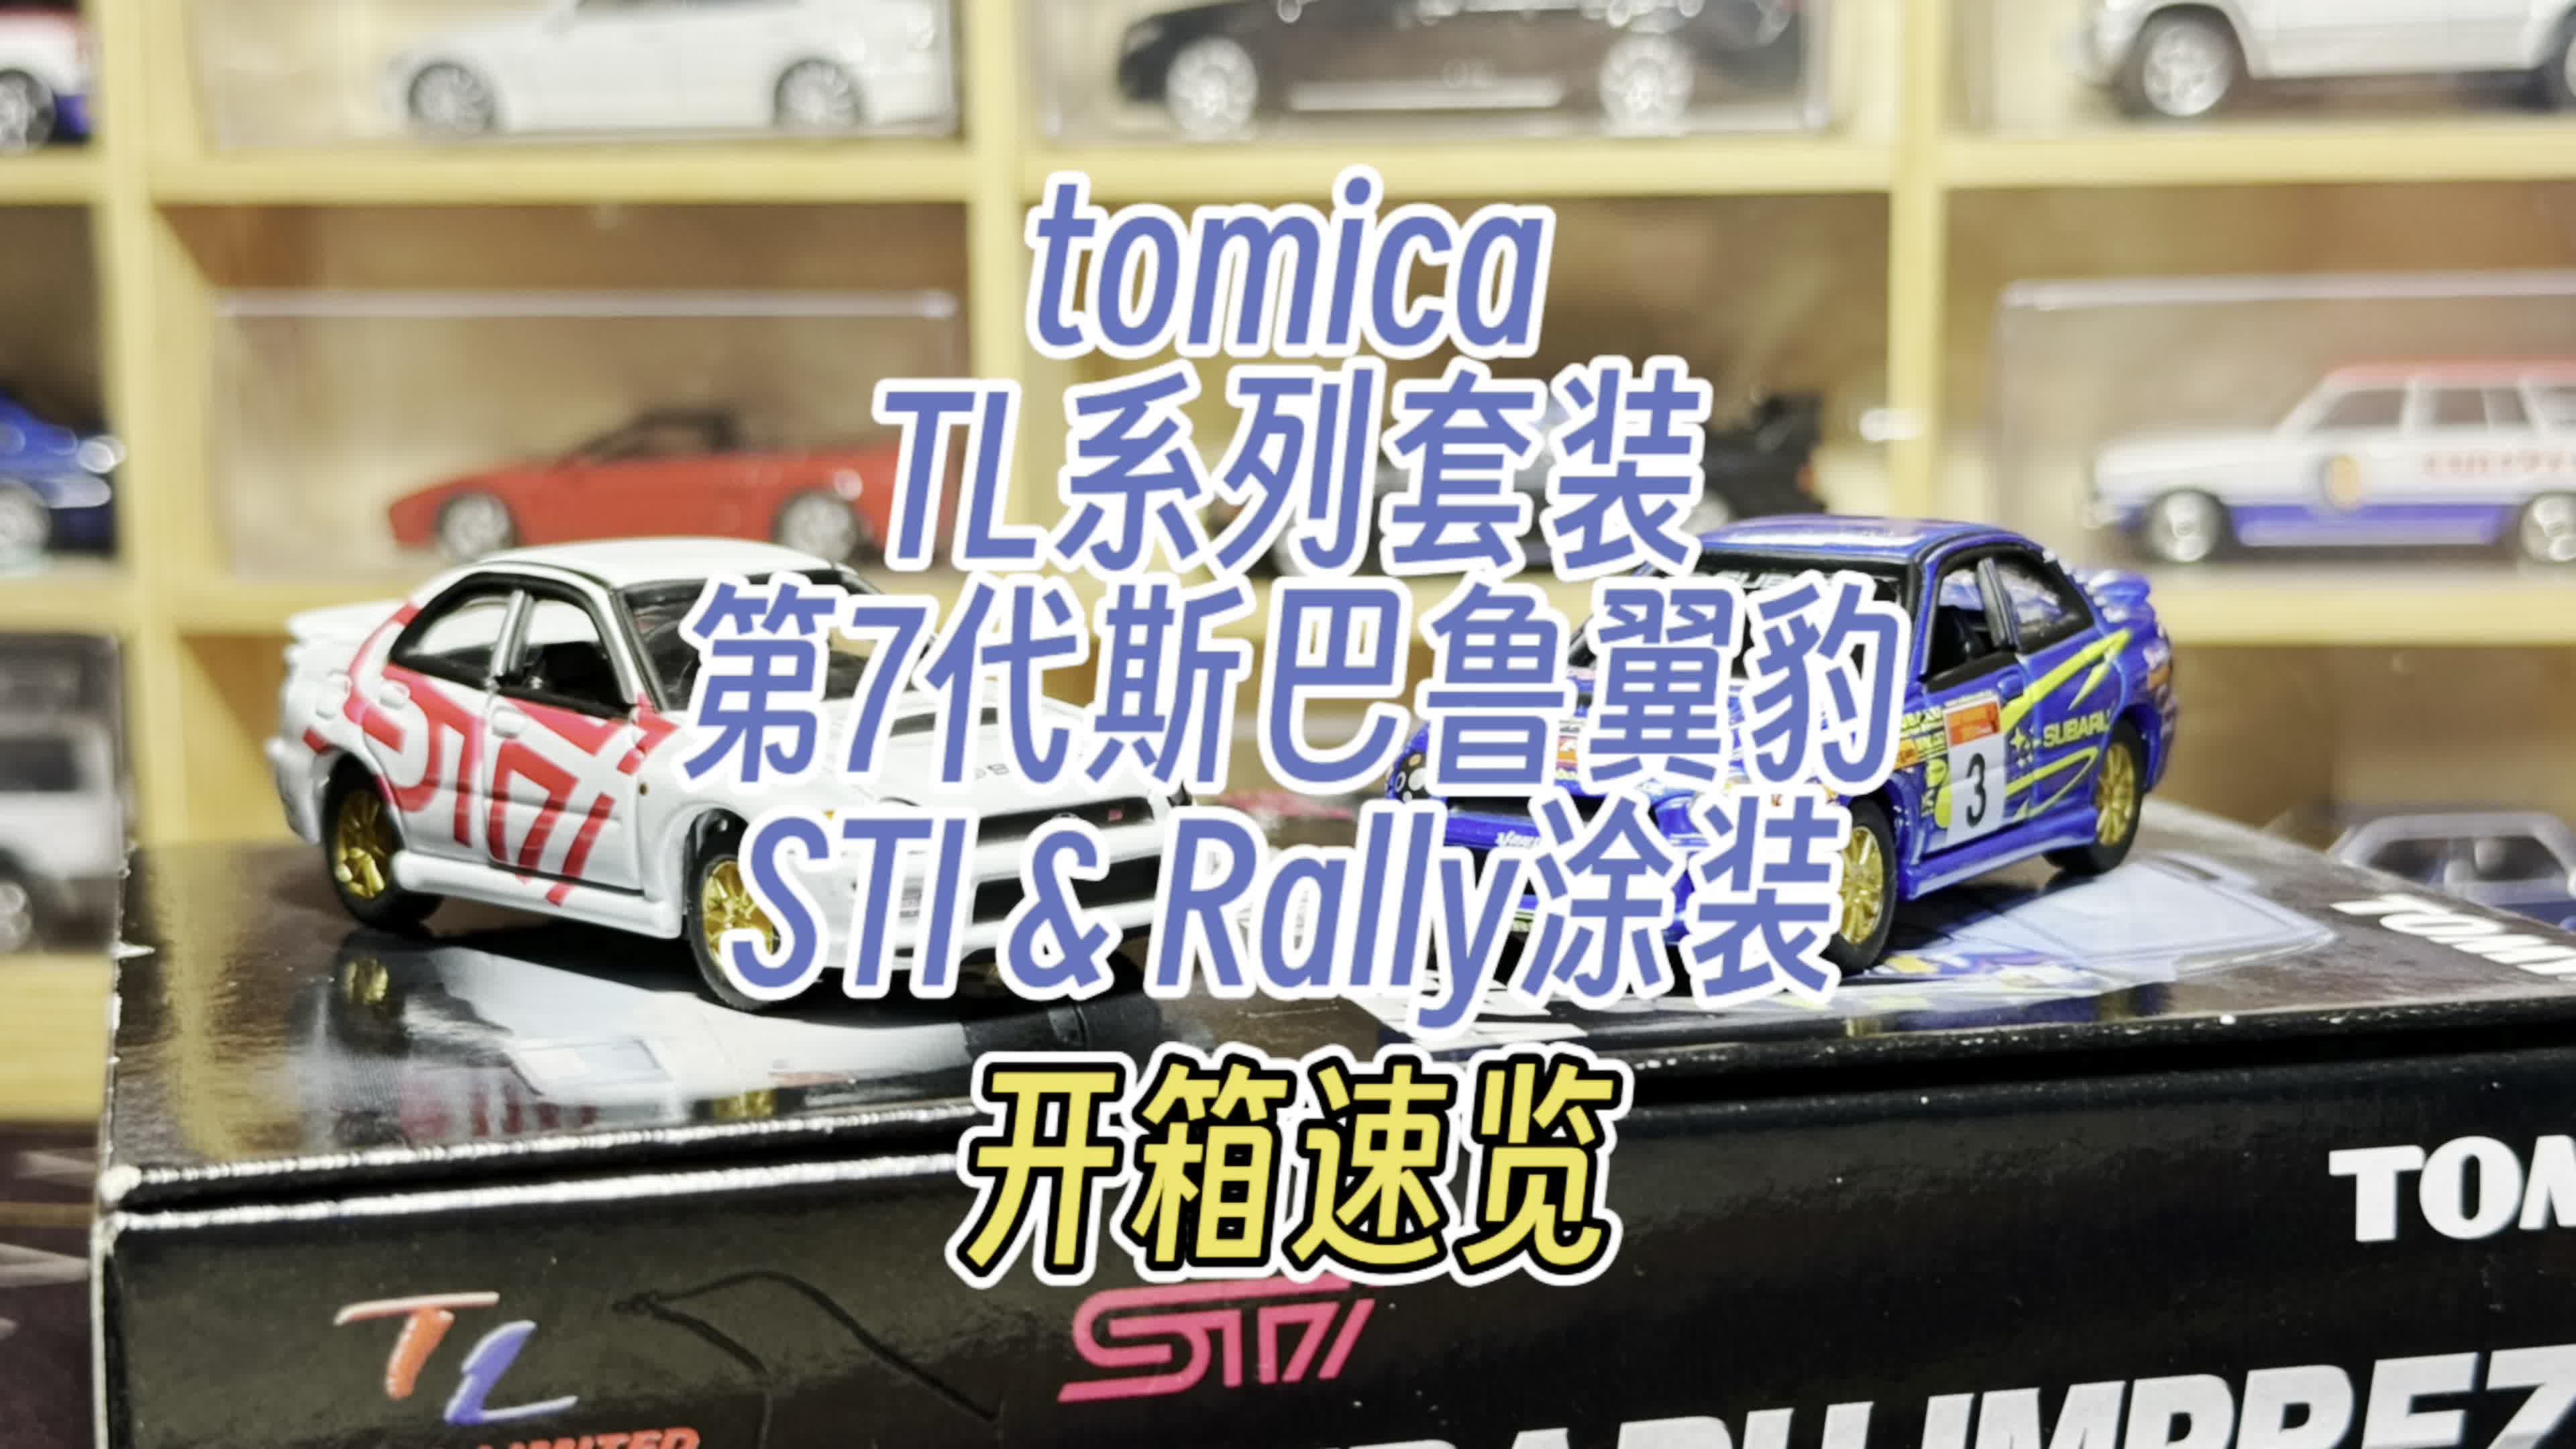 【开箱速览】tomica Limited 斯巴鲁7代“虫眼”翼豹双车套